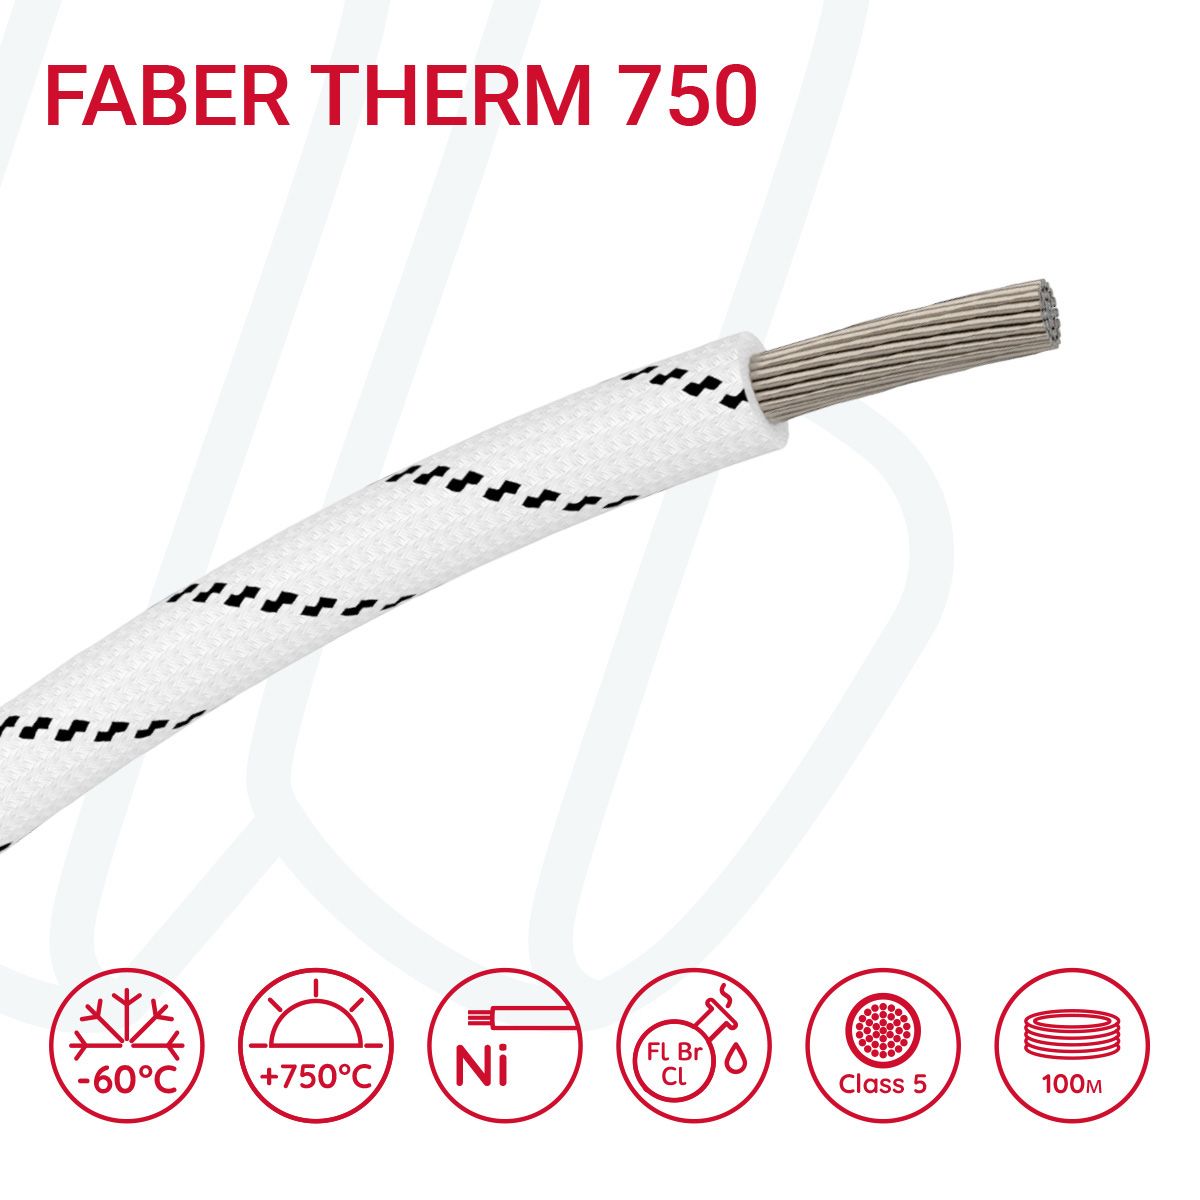 Провід термостійкий FABER THERM 750 01X1.5 в плетінні з чорною ниткою, 01, 1.5